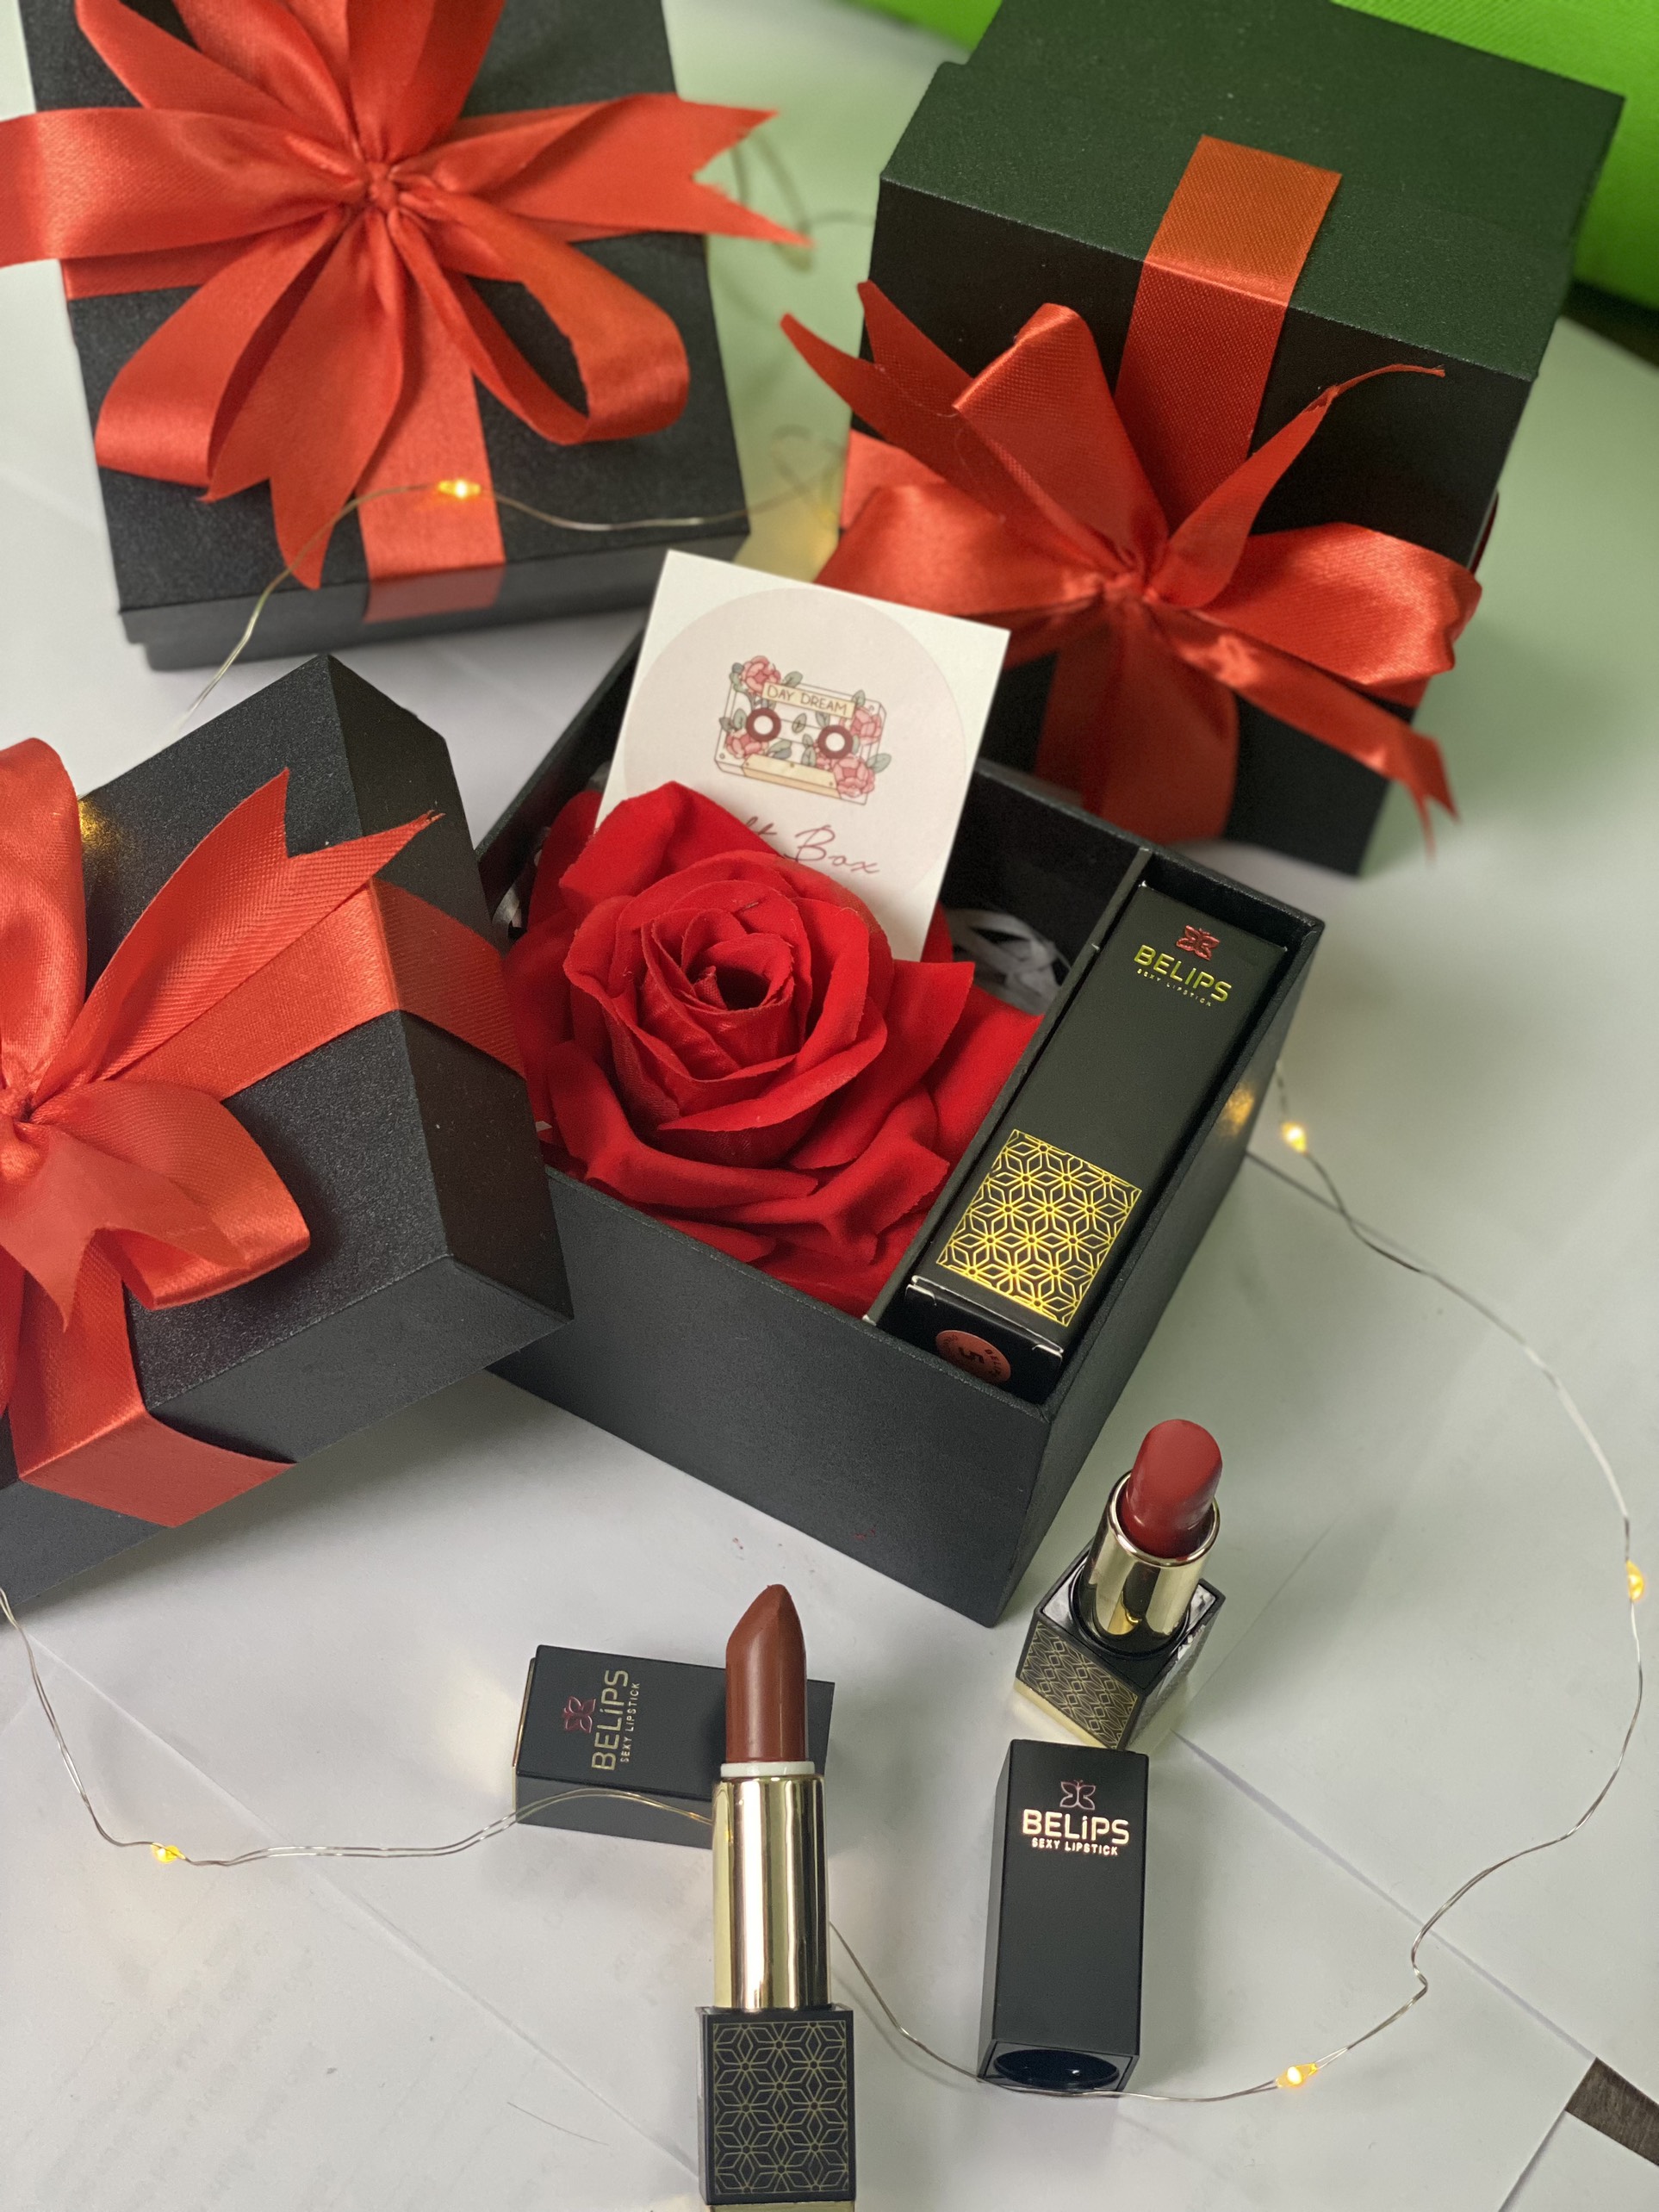 Hộp quà tặng hoa hồng Belips 1 son thỏi vỏ đen truyền thống sang trọng tinh tế